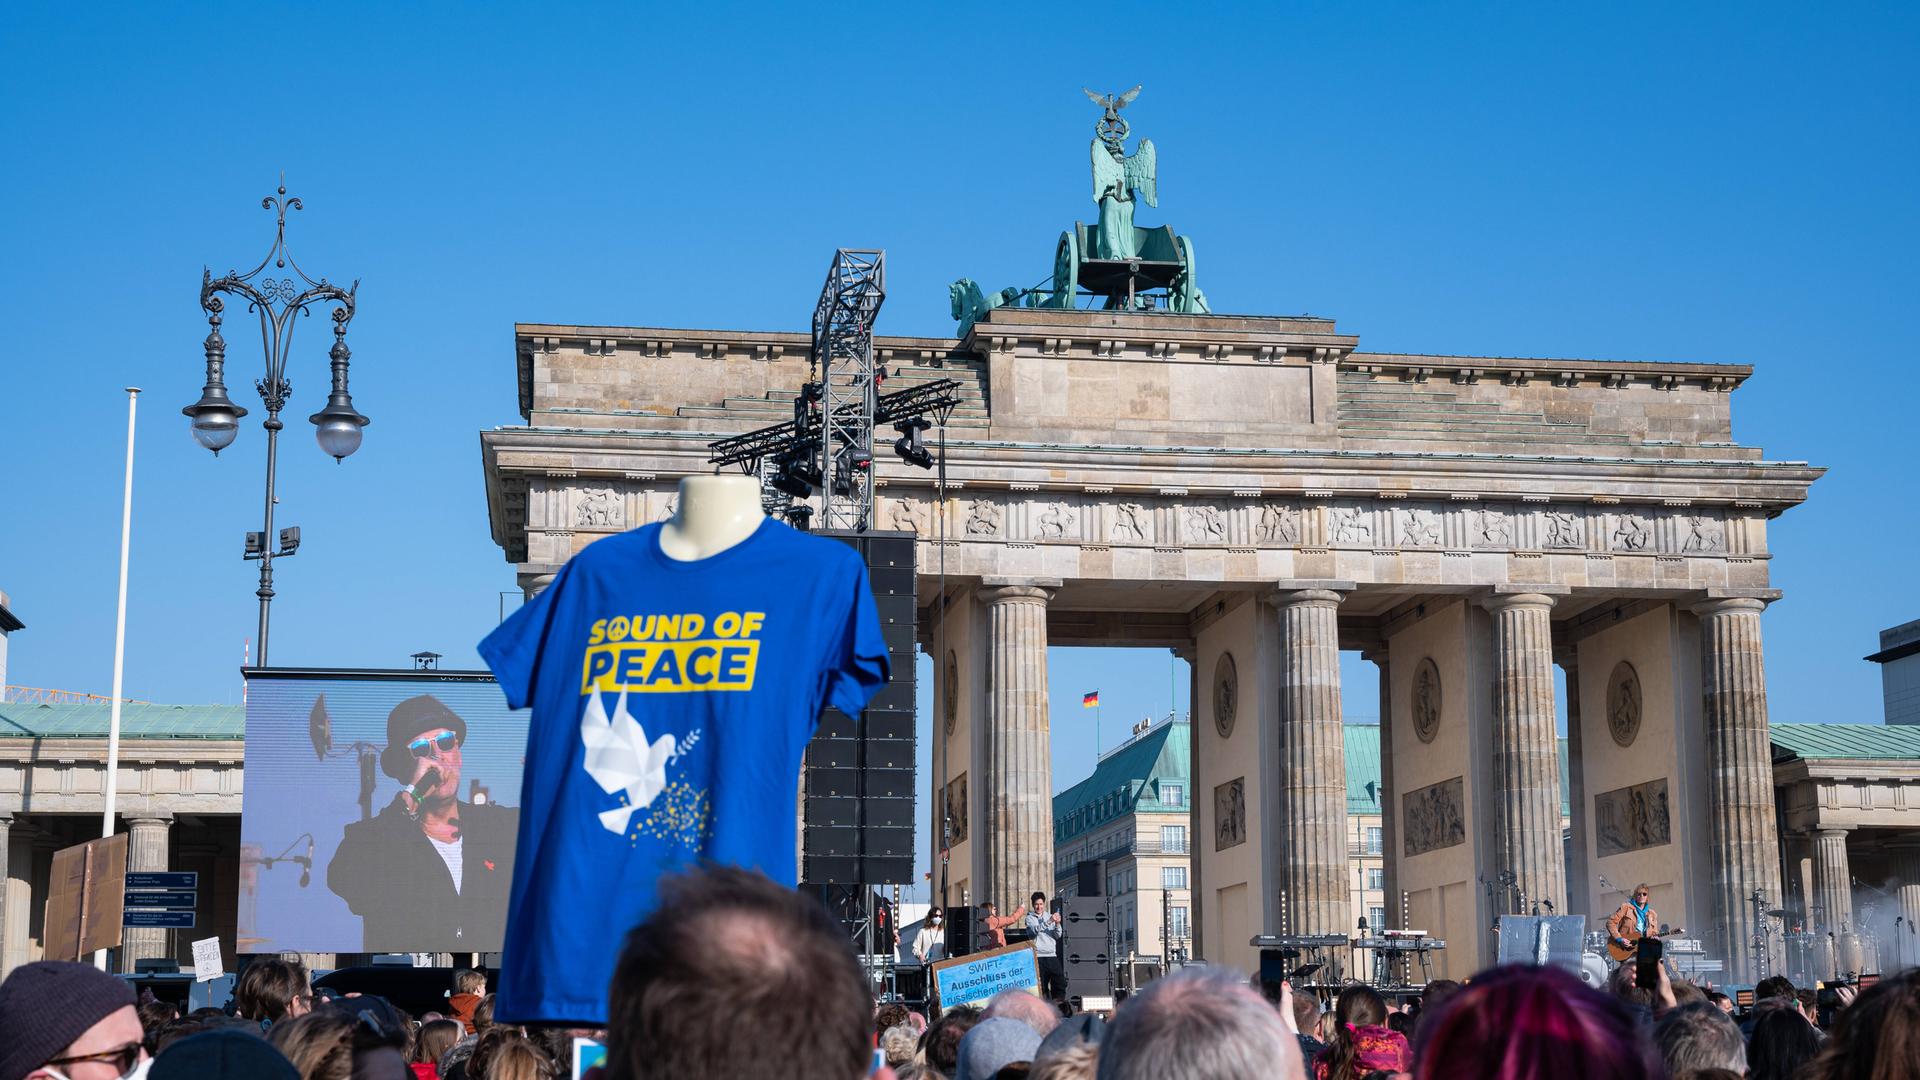 Zuschauer vor dem Brandenburger Tor verfolgen das Geschehen bei der Friedensaktion "Sound of Peace", während Marius Müller-Westernhagen auf einem Bildschirm zu sehen ist.